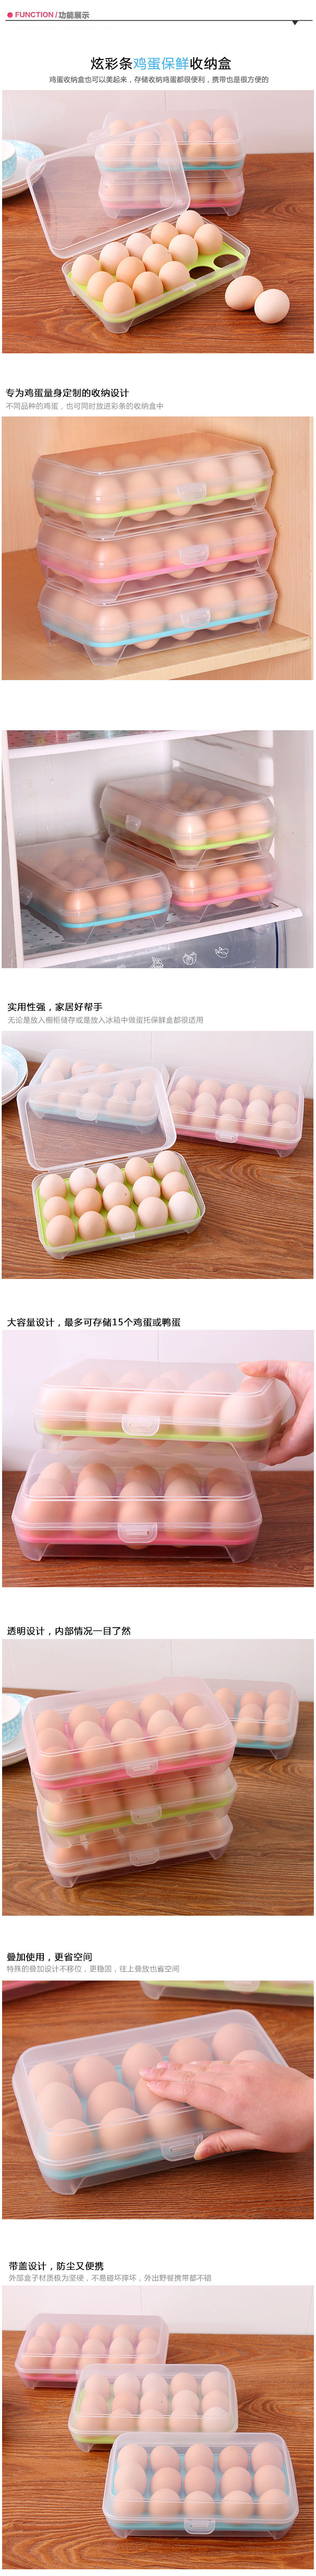 冰箱雞蛋盒食物保鮮盒雞蛋托雞蛋格蛋盒廚房塑料盒子放雞蛋收納盒